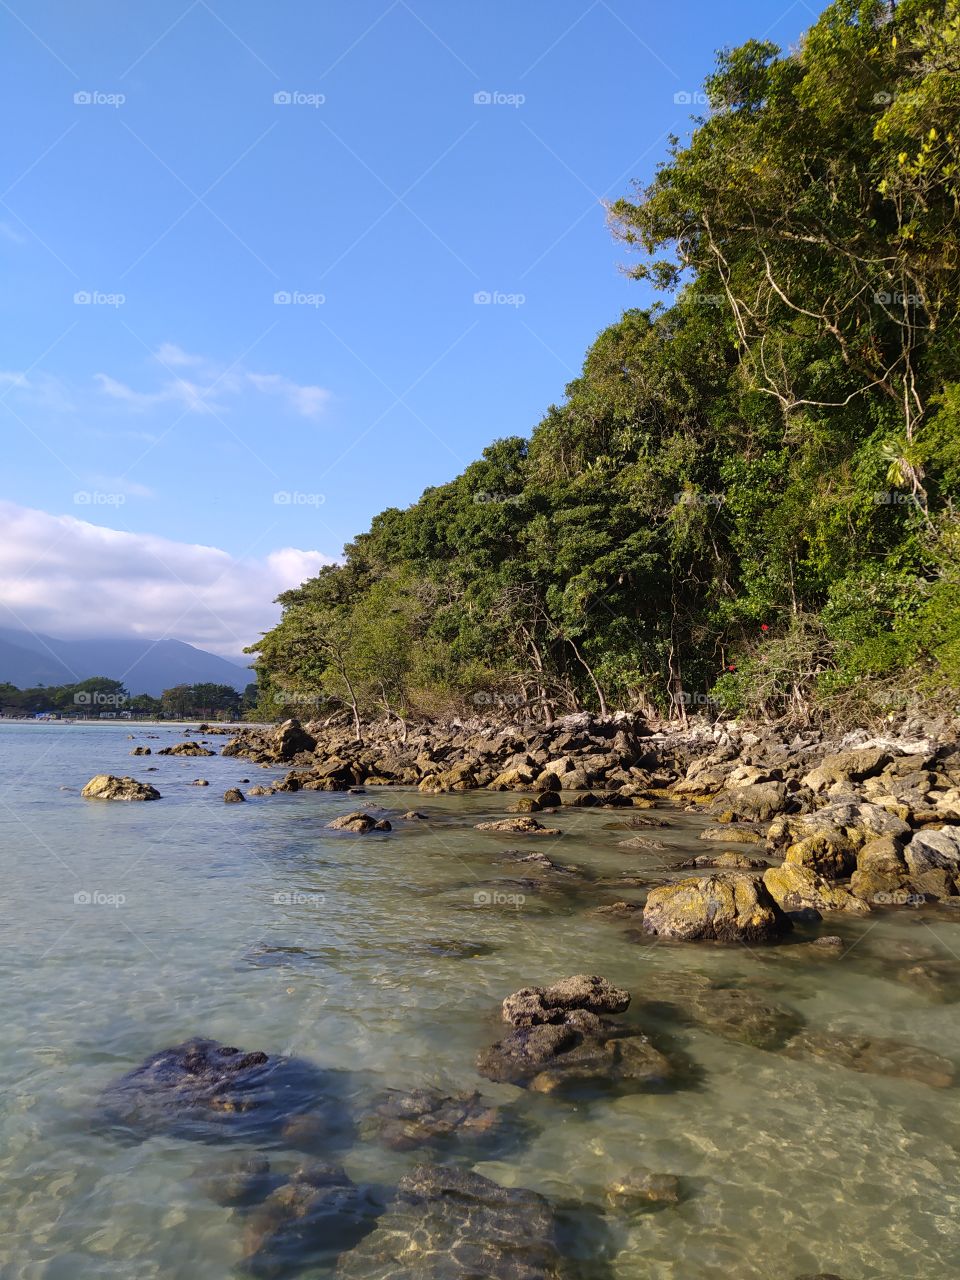 Visita ao canto da praia de Boracéia, um lugar lindo com pedras, árvores e água cristalina.